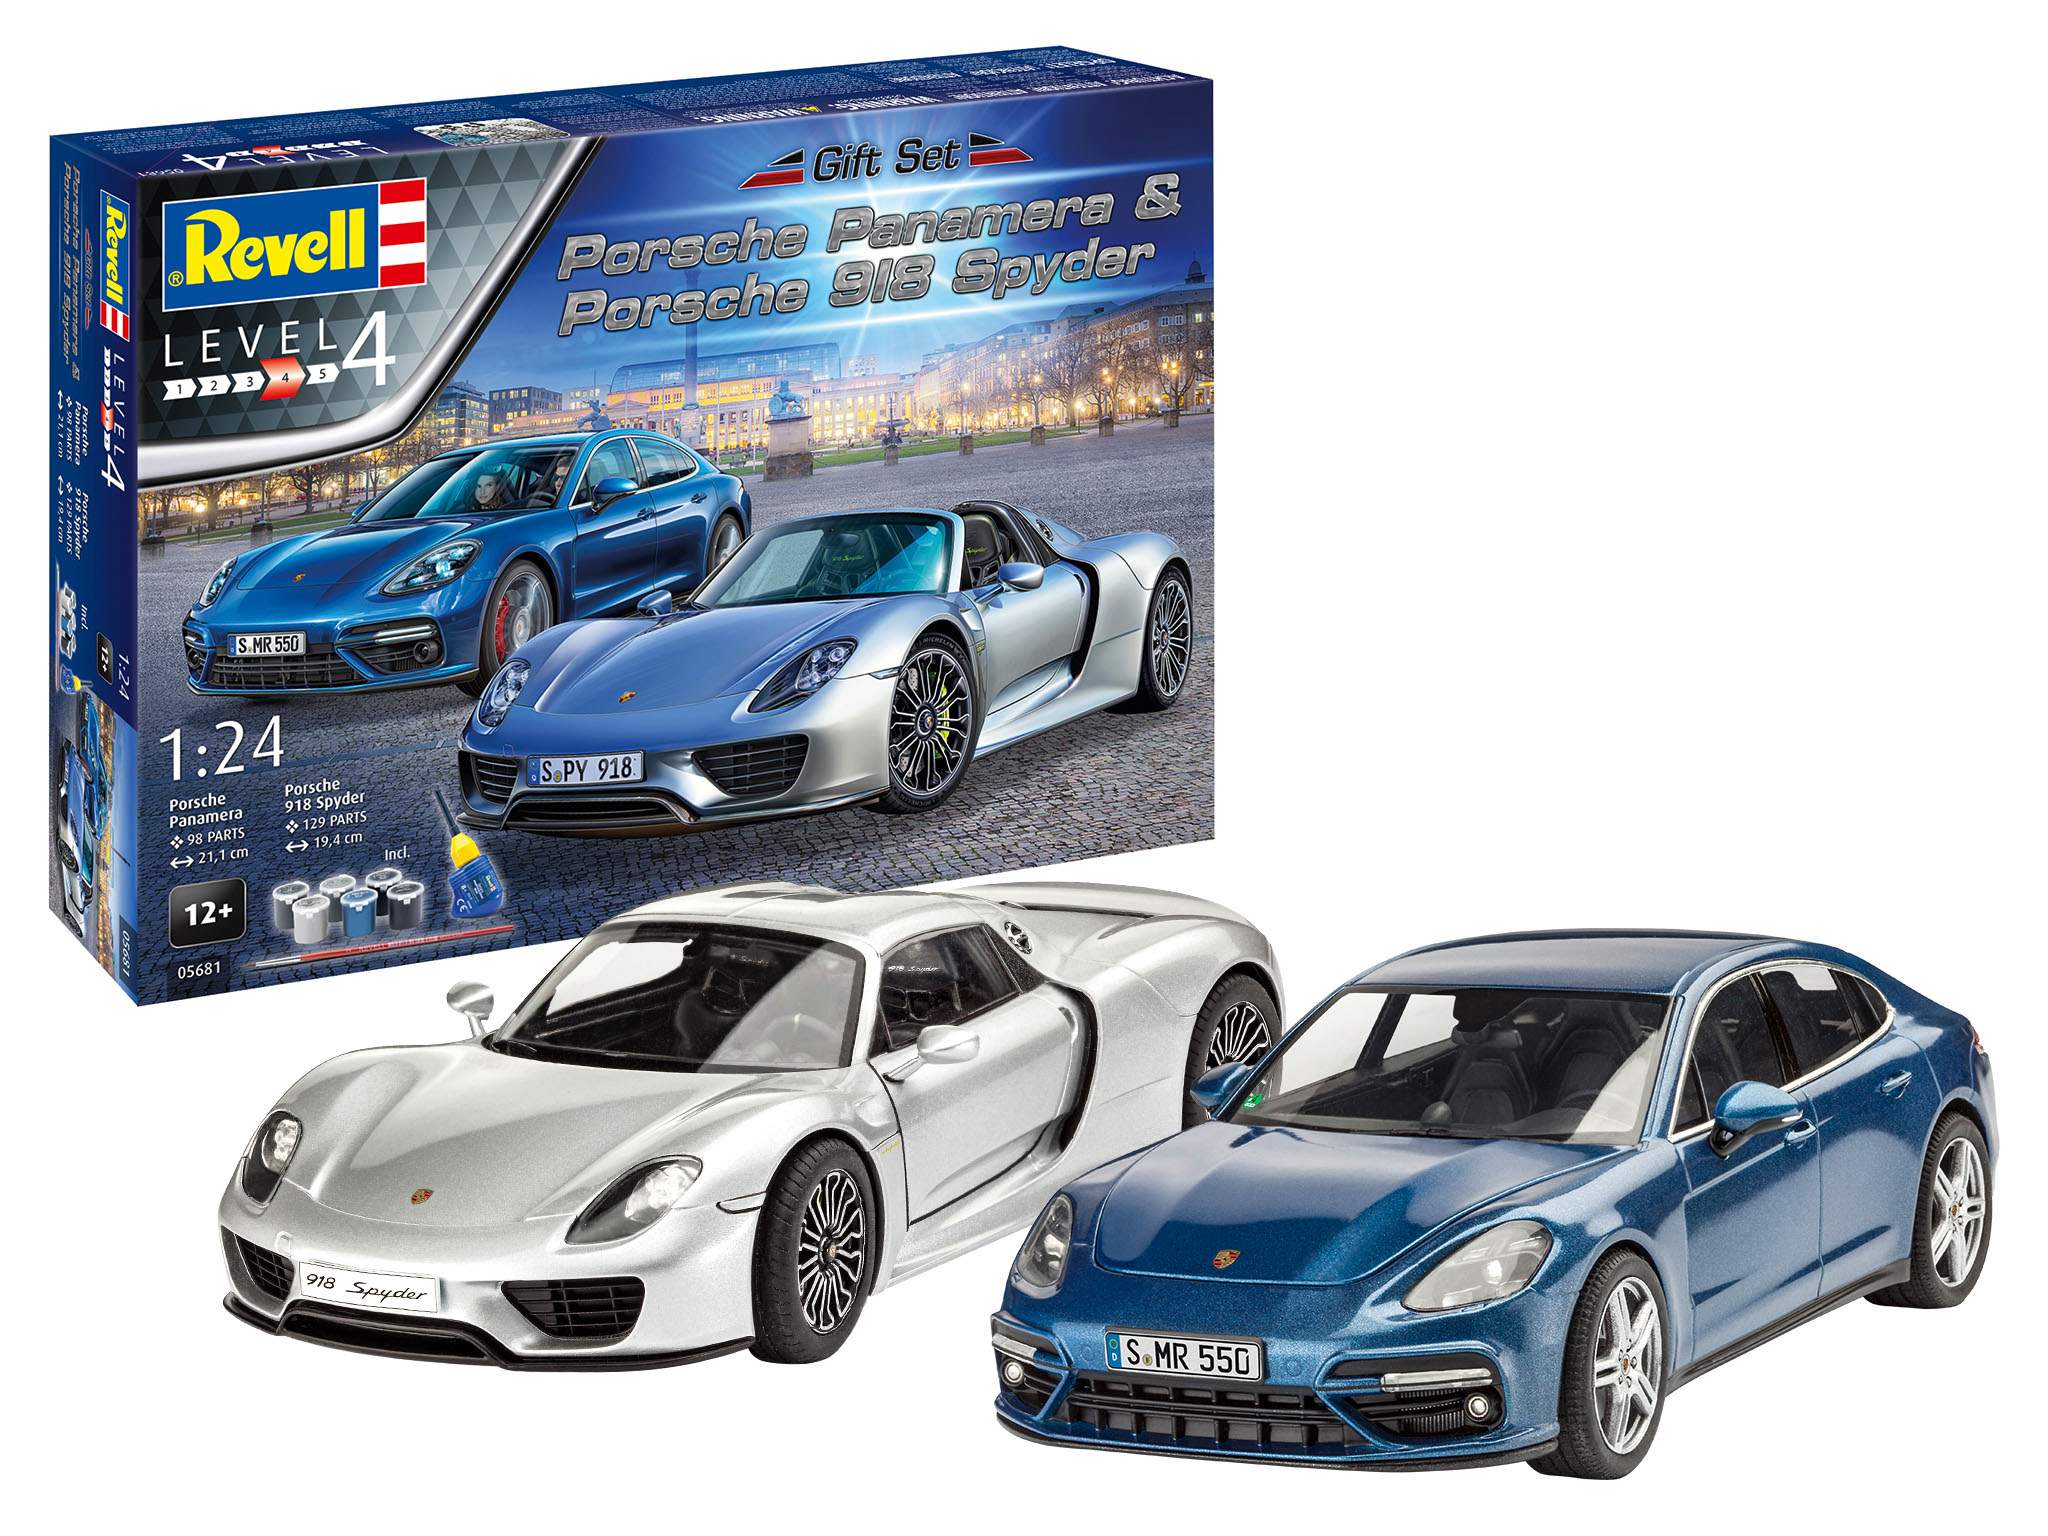 Vanaf daar Advertentie gebaar Revell Porsche Set in 1:24 bouwpakket met lijm en verf · Toemen Modelsport